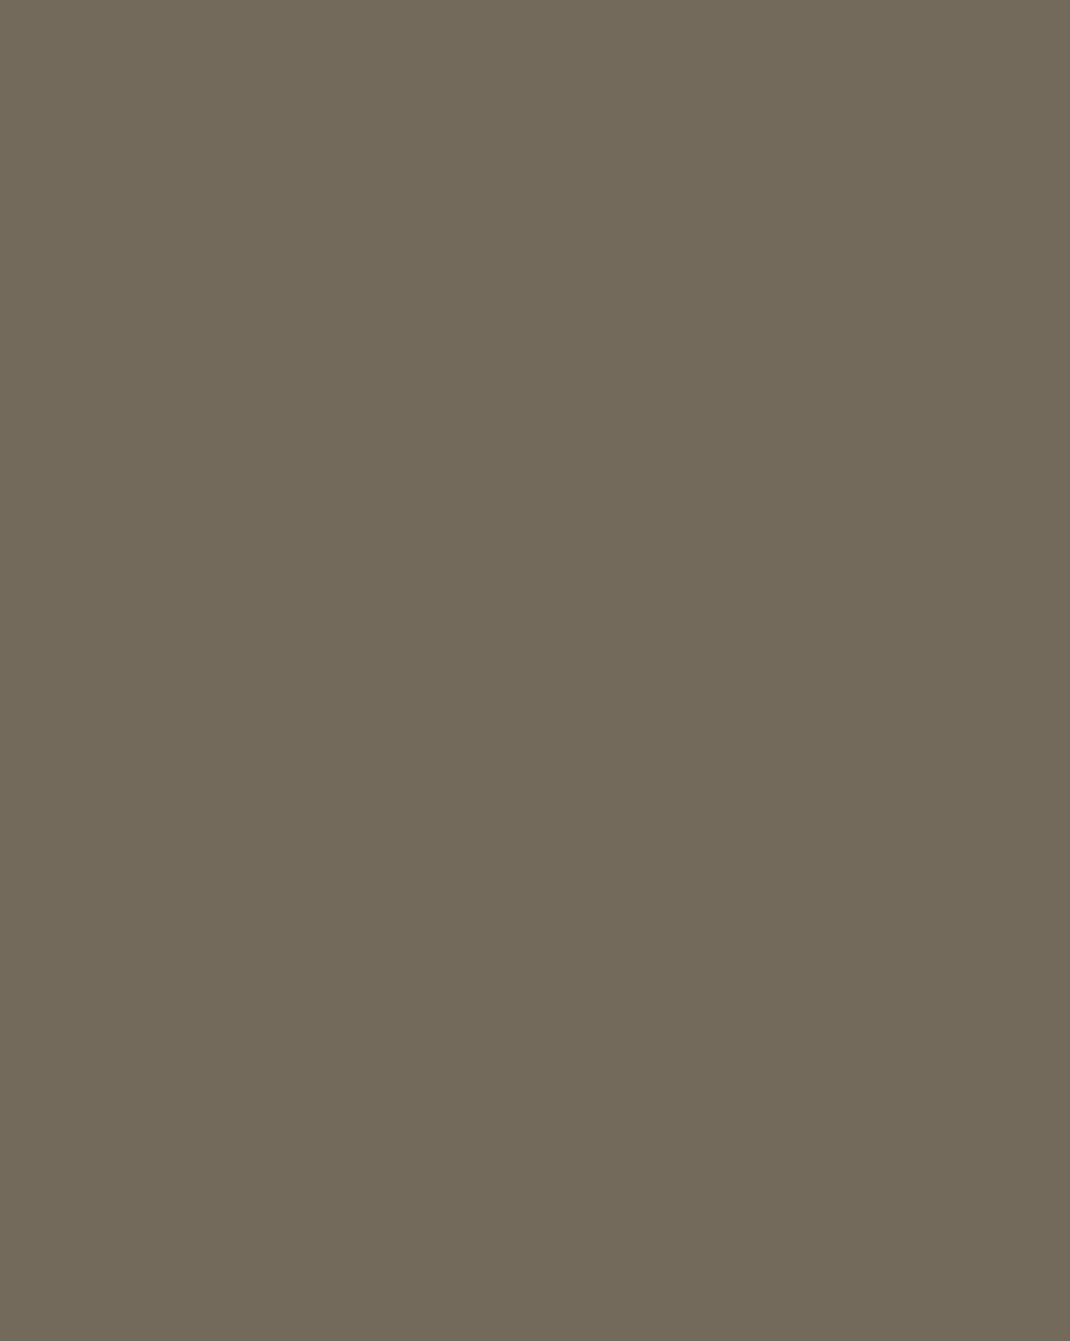 Наталья Гончарова. Портрет Михаила Ларионова и его взводного. 1911. Государственный Русский музей, Санкт-Петербург